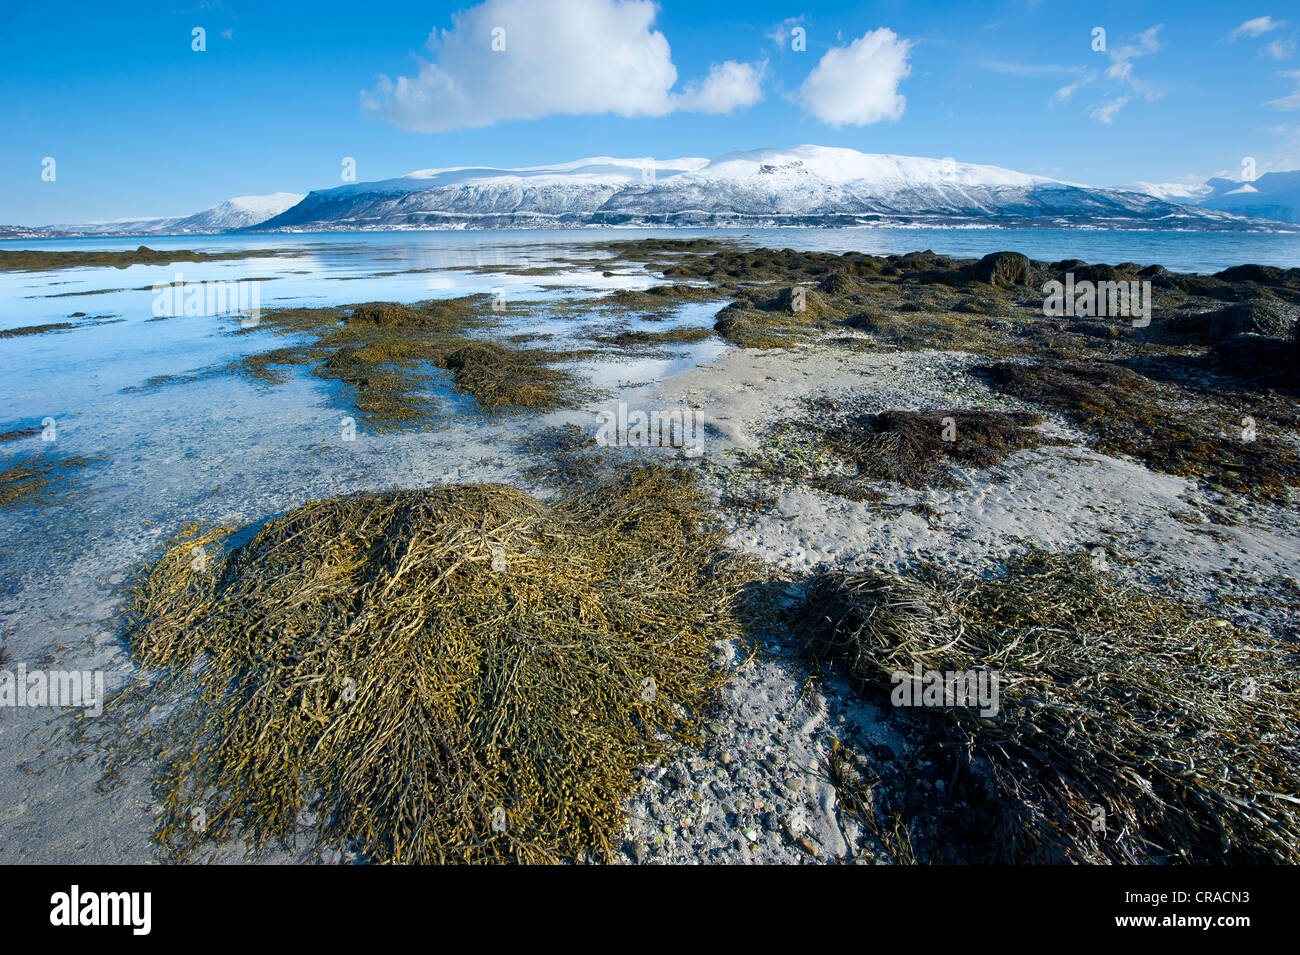 Herbe de mer et rochers sur une plage à marée basse avec une crête de montagne dans l'arrière-plan Banque D'Images